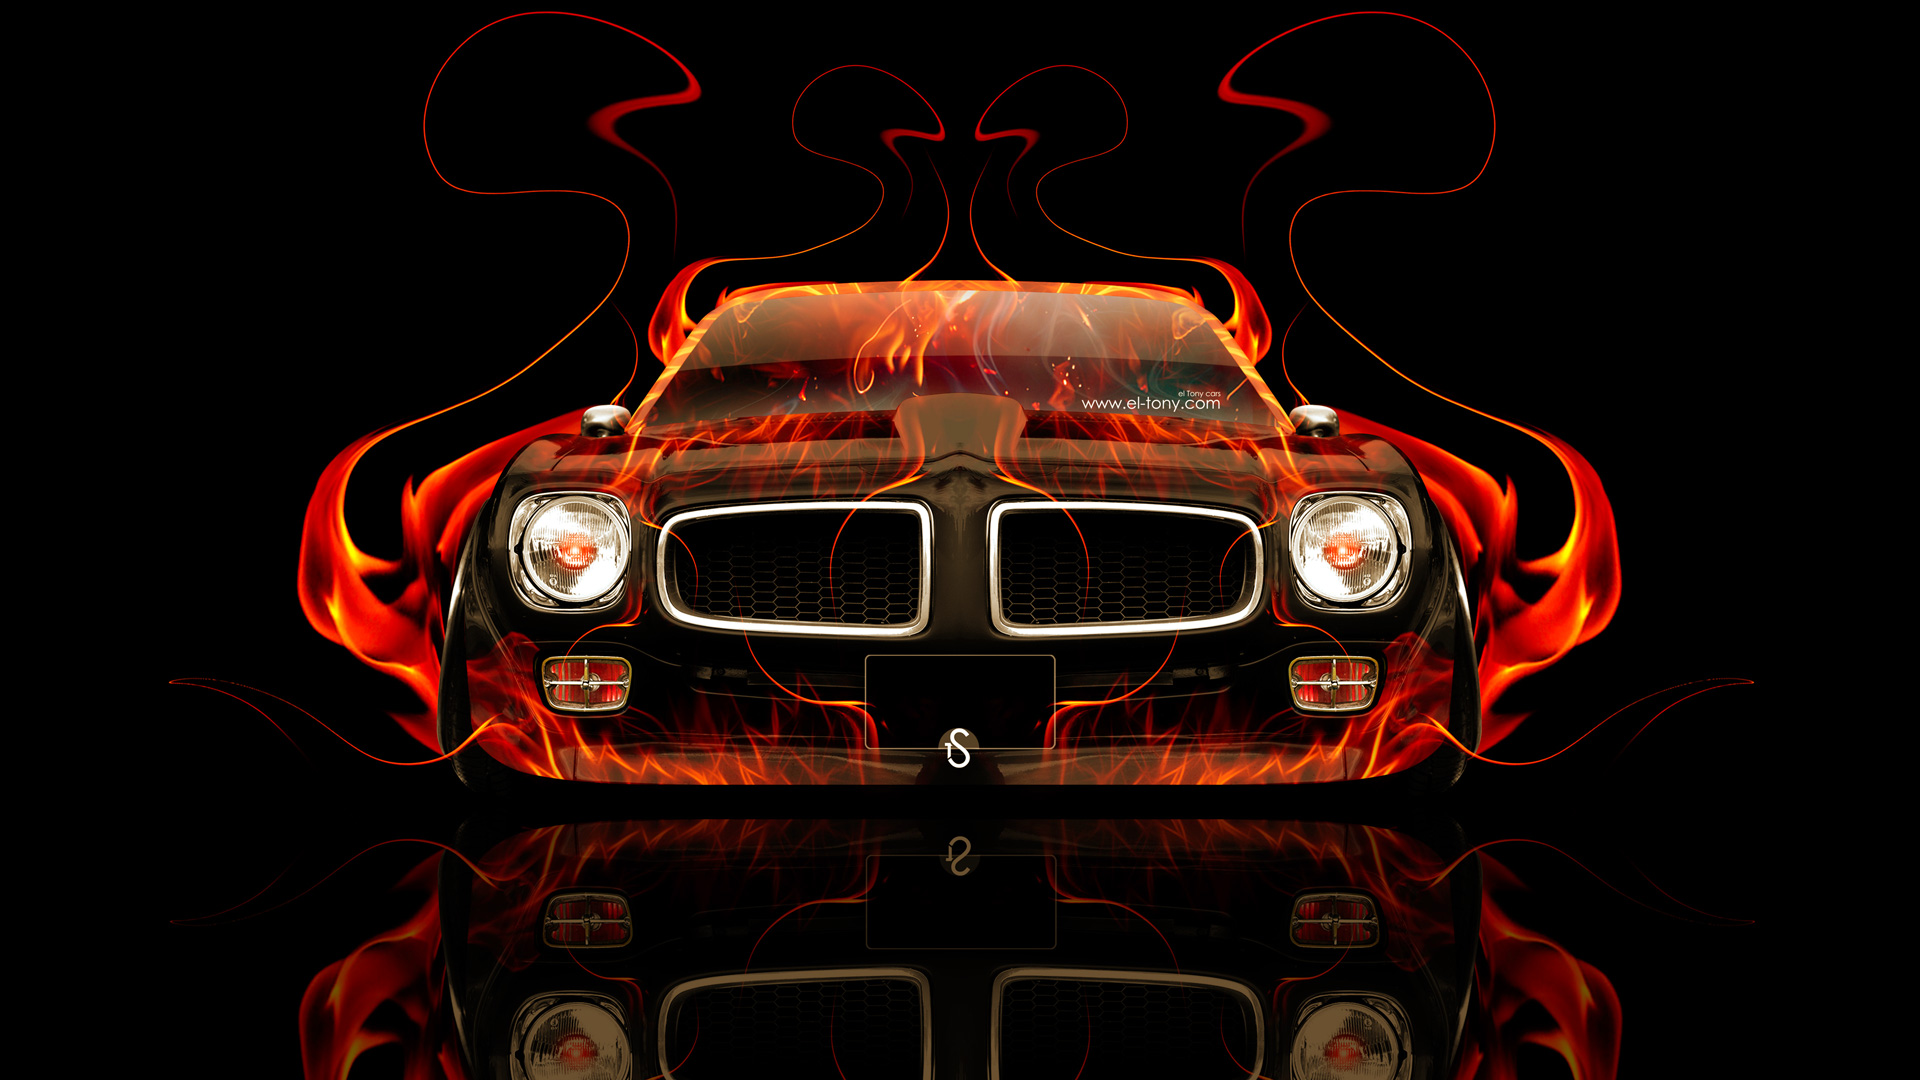 Pontiac Firebird Back Fire Abstract Car Side